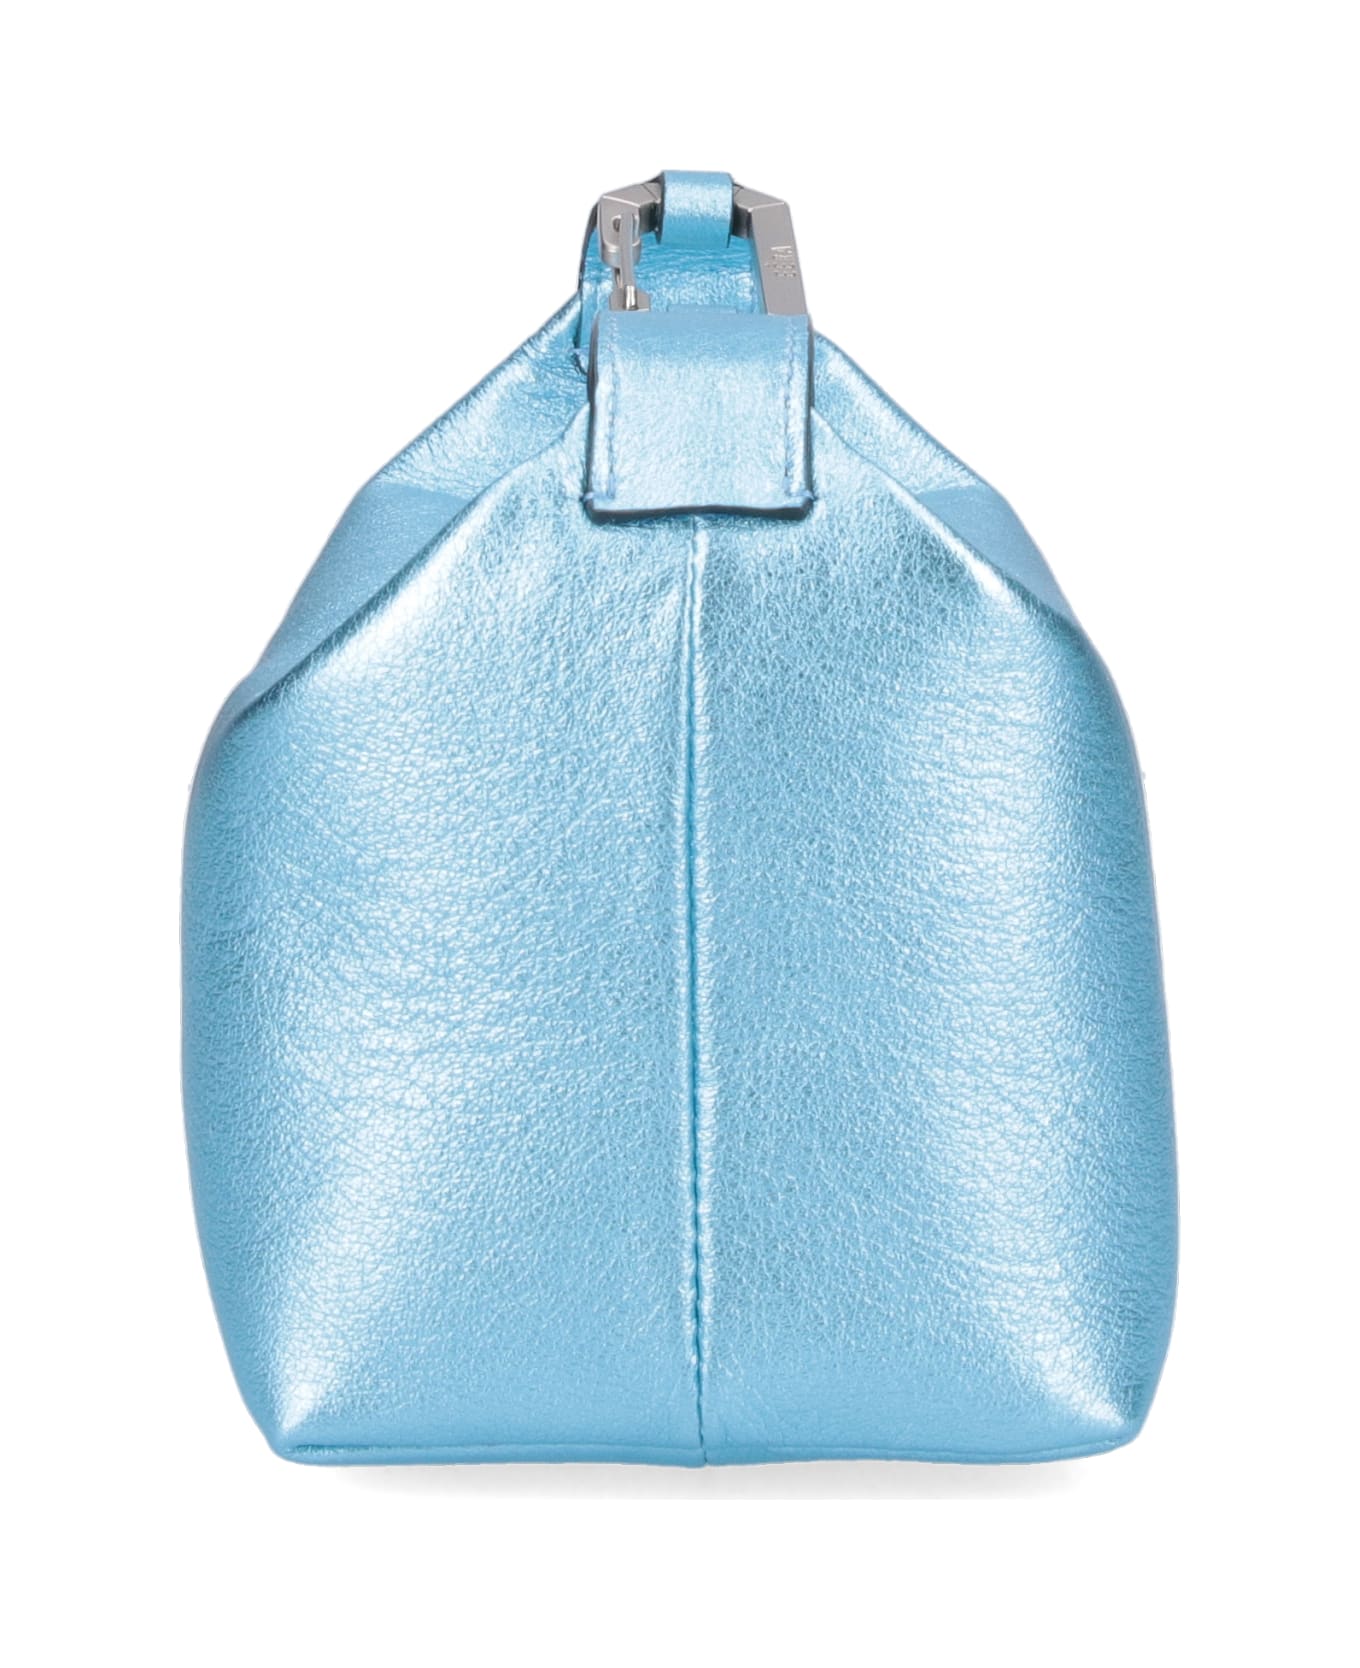 EÉRA "moon" Handbag - Light Blue